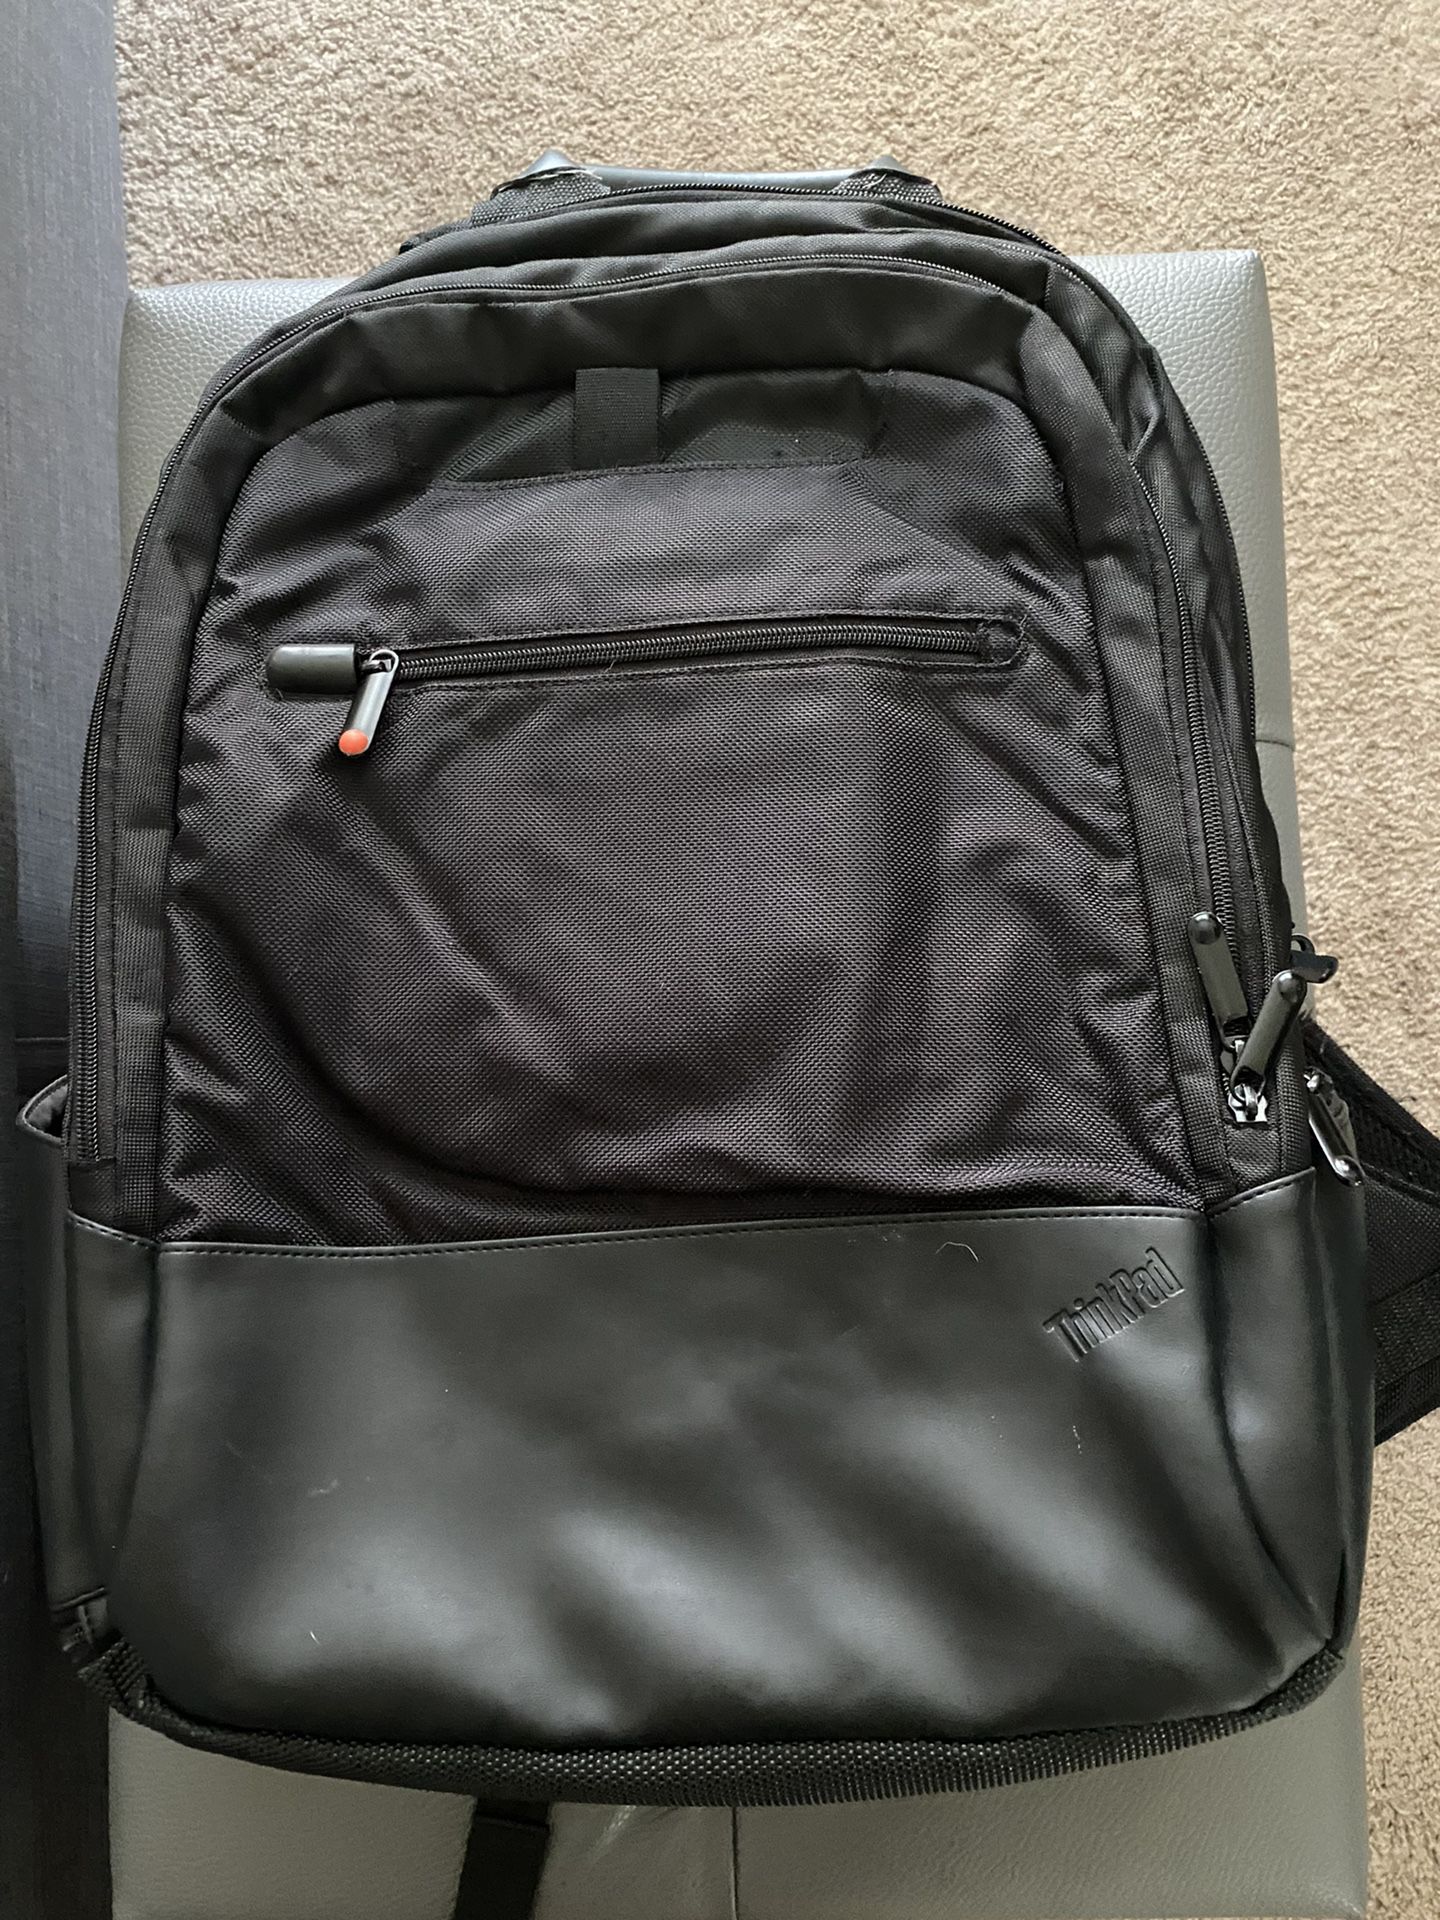 Lenovo Backpack